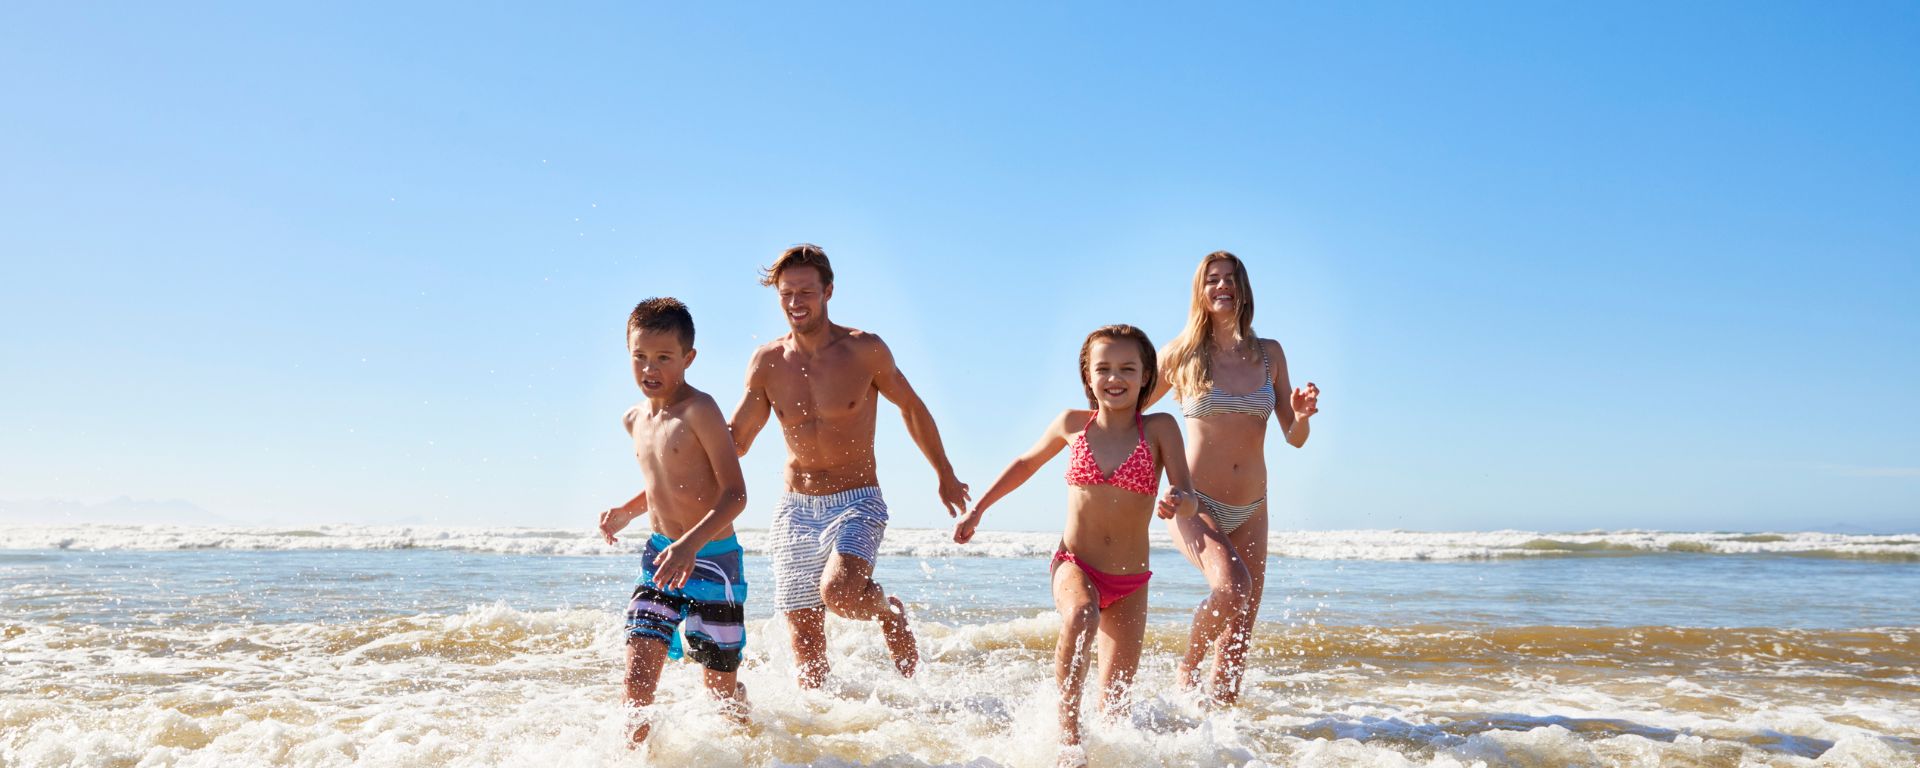 Familienangebot 7 Tage zum Preis von 6 Tage mit Strand inklusive und 1 Kind gratis